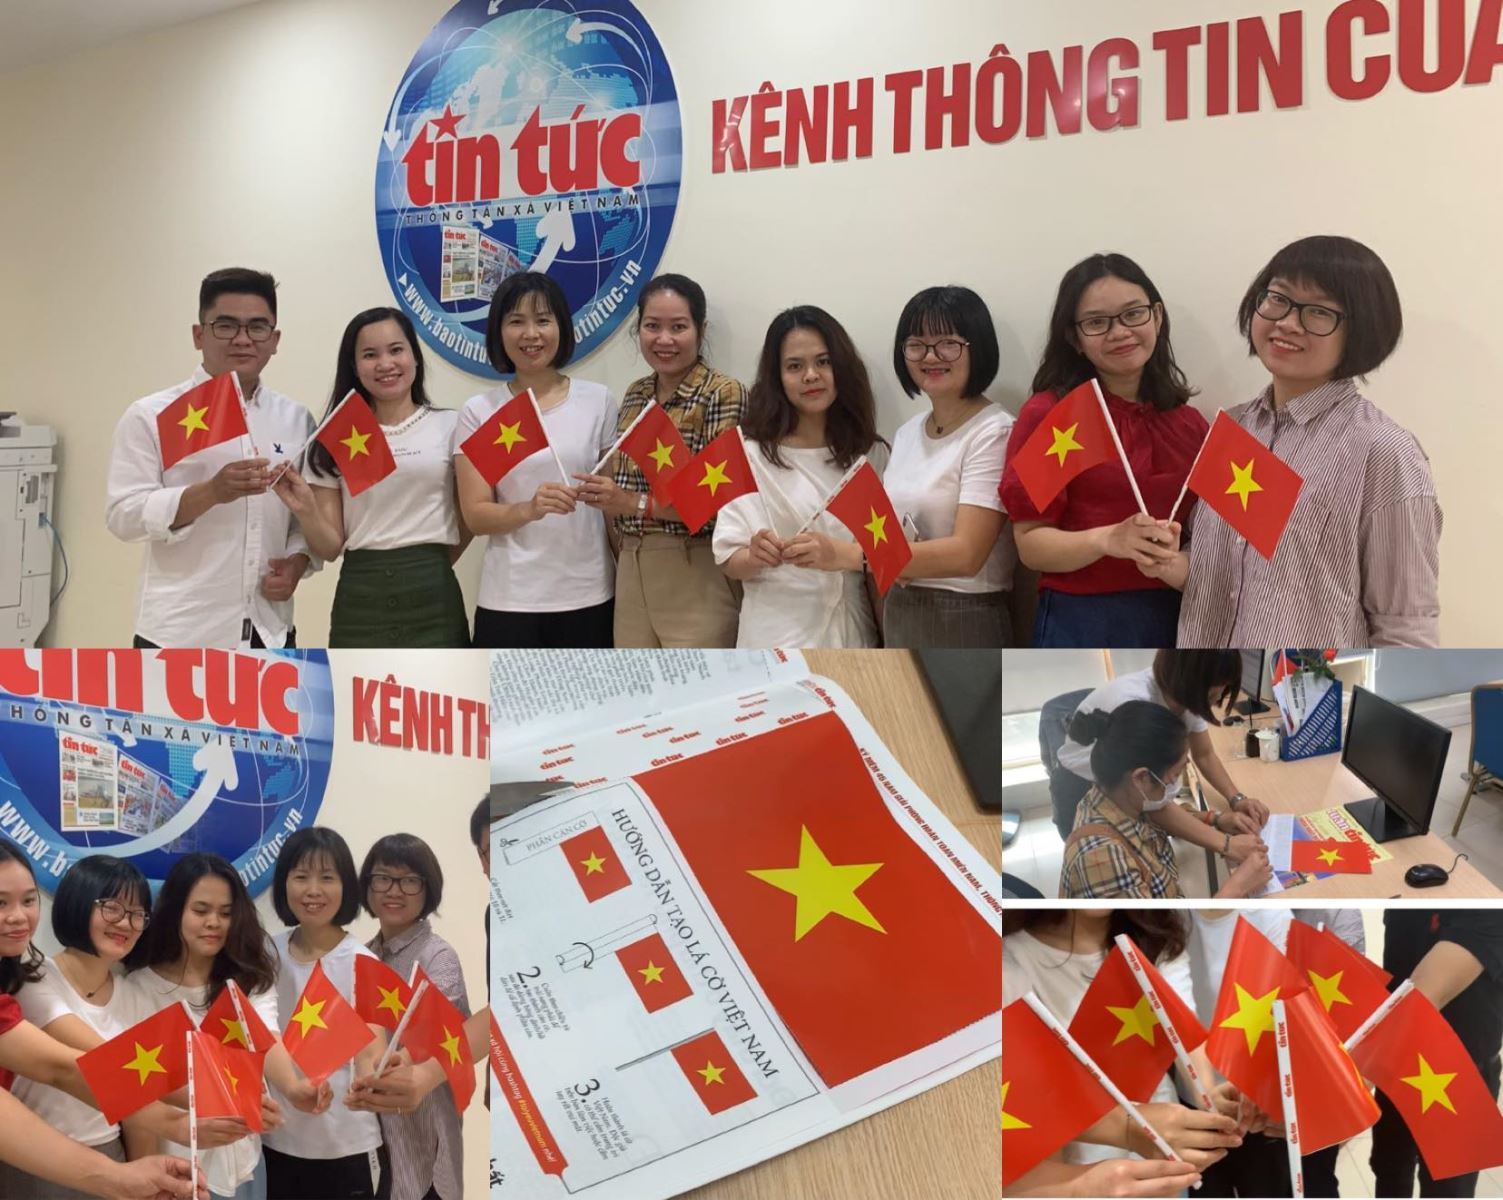 Lan toả giá trị của lá cờ Việt Nam đến mọi người, mọi nơi, hình ảnh này sẽ là nguồn cảm hứng vô tận cho mọi người. Và hình ảnh lá cờ Việt Nam tại đây được thiết kế hiện đại, độ phân giải cao nhất sẽ mang đến cho bạn một trải nghiệm tuyệt vời.